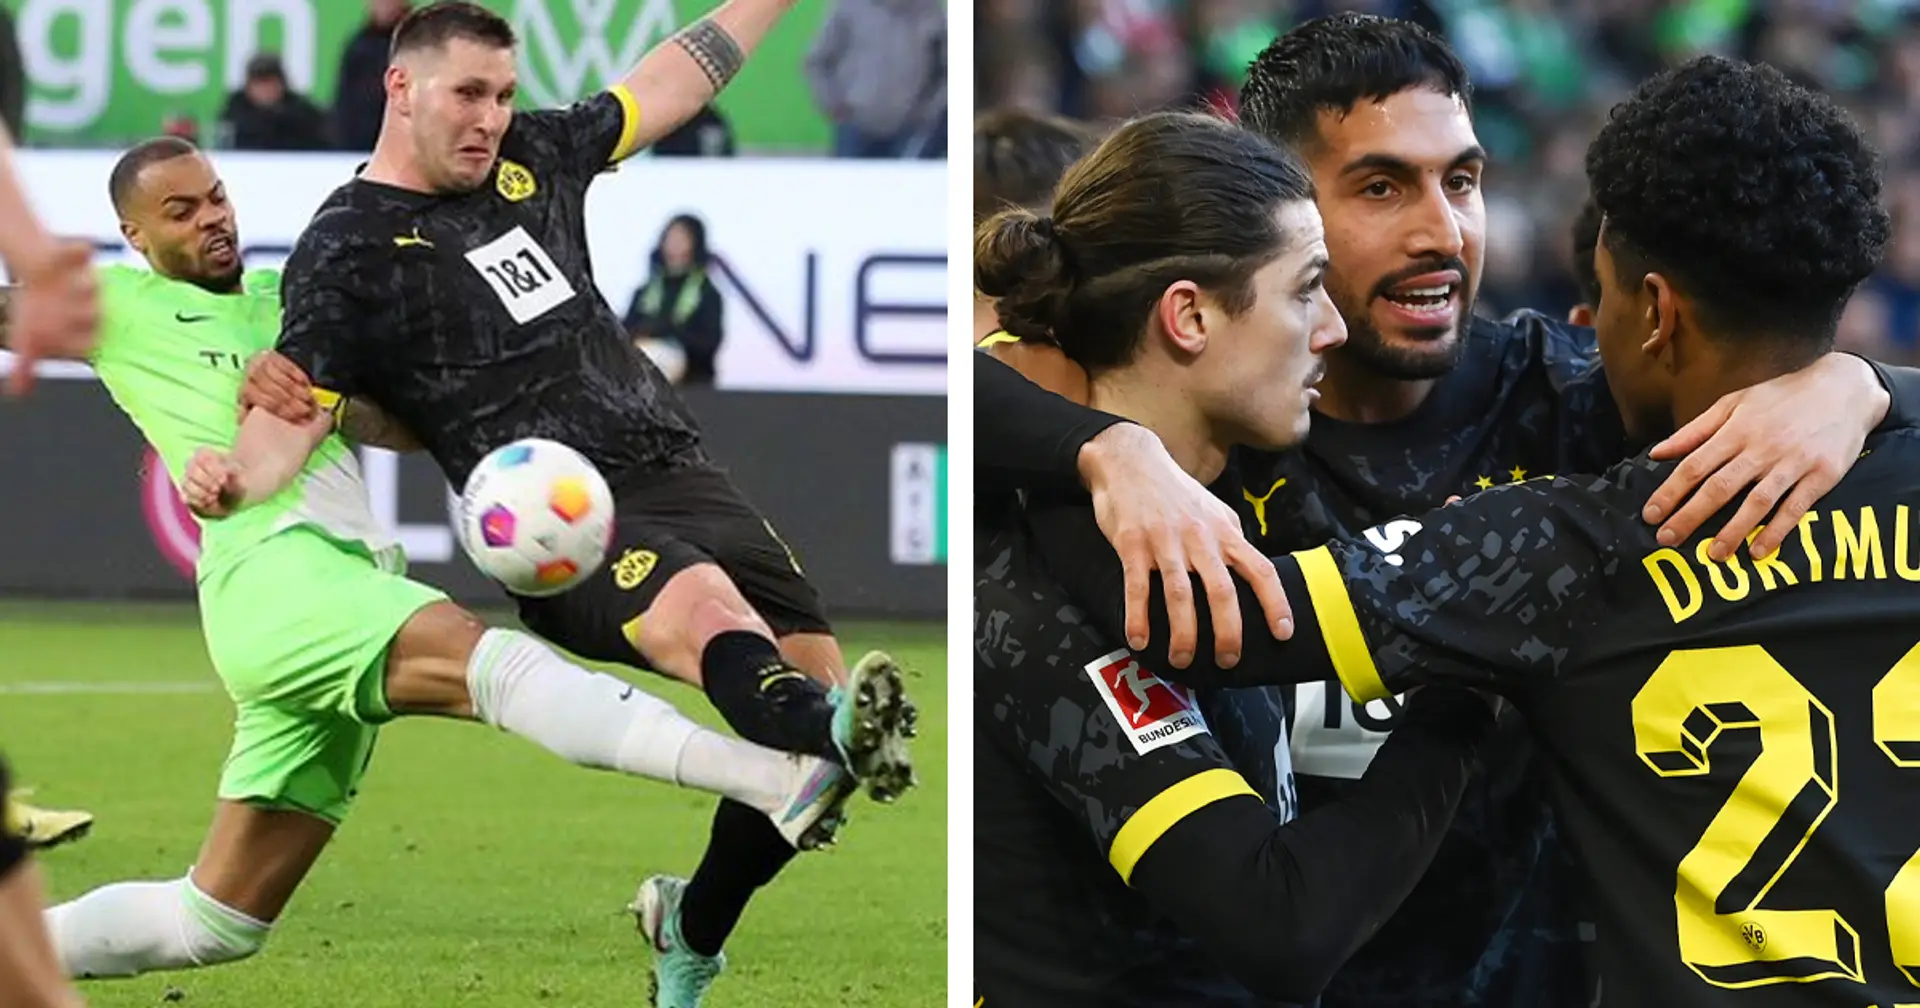 Weder sexy noch erfolgreich: 3 Kernpunkte zum 1:1-Remis des BVB vs. Wolfsburg